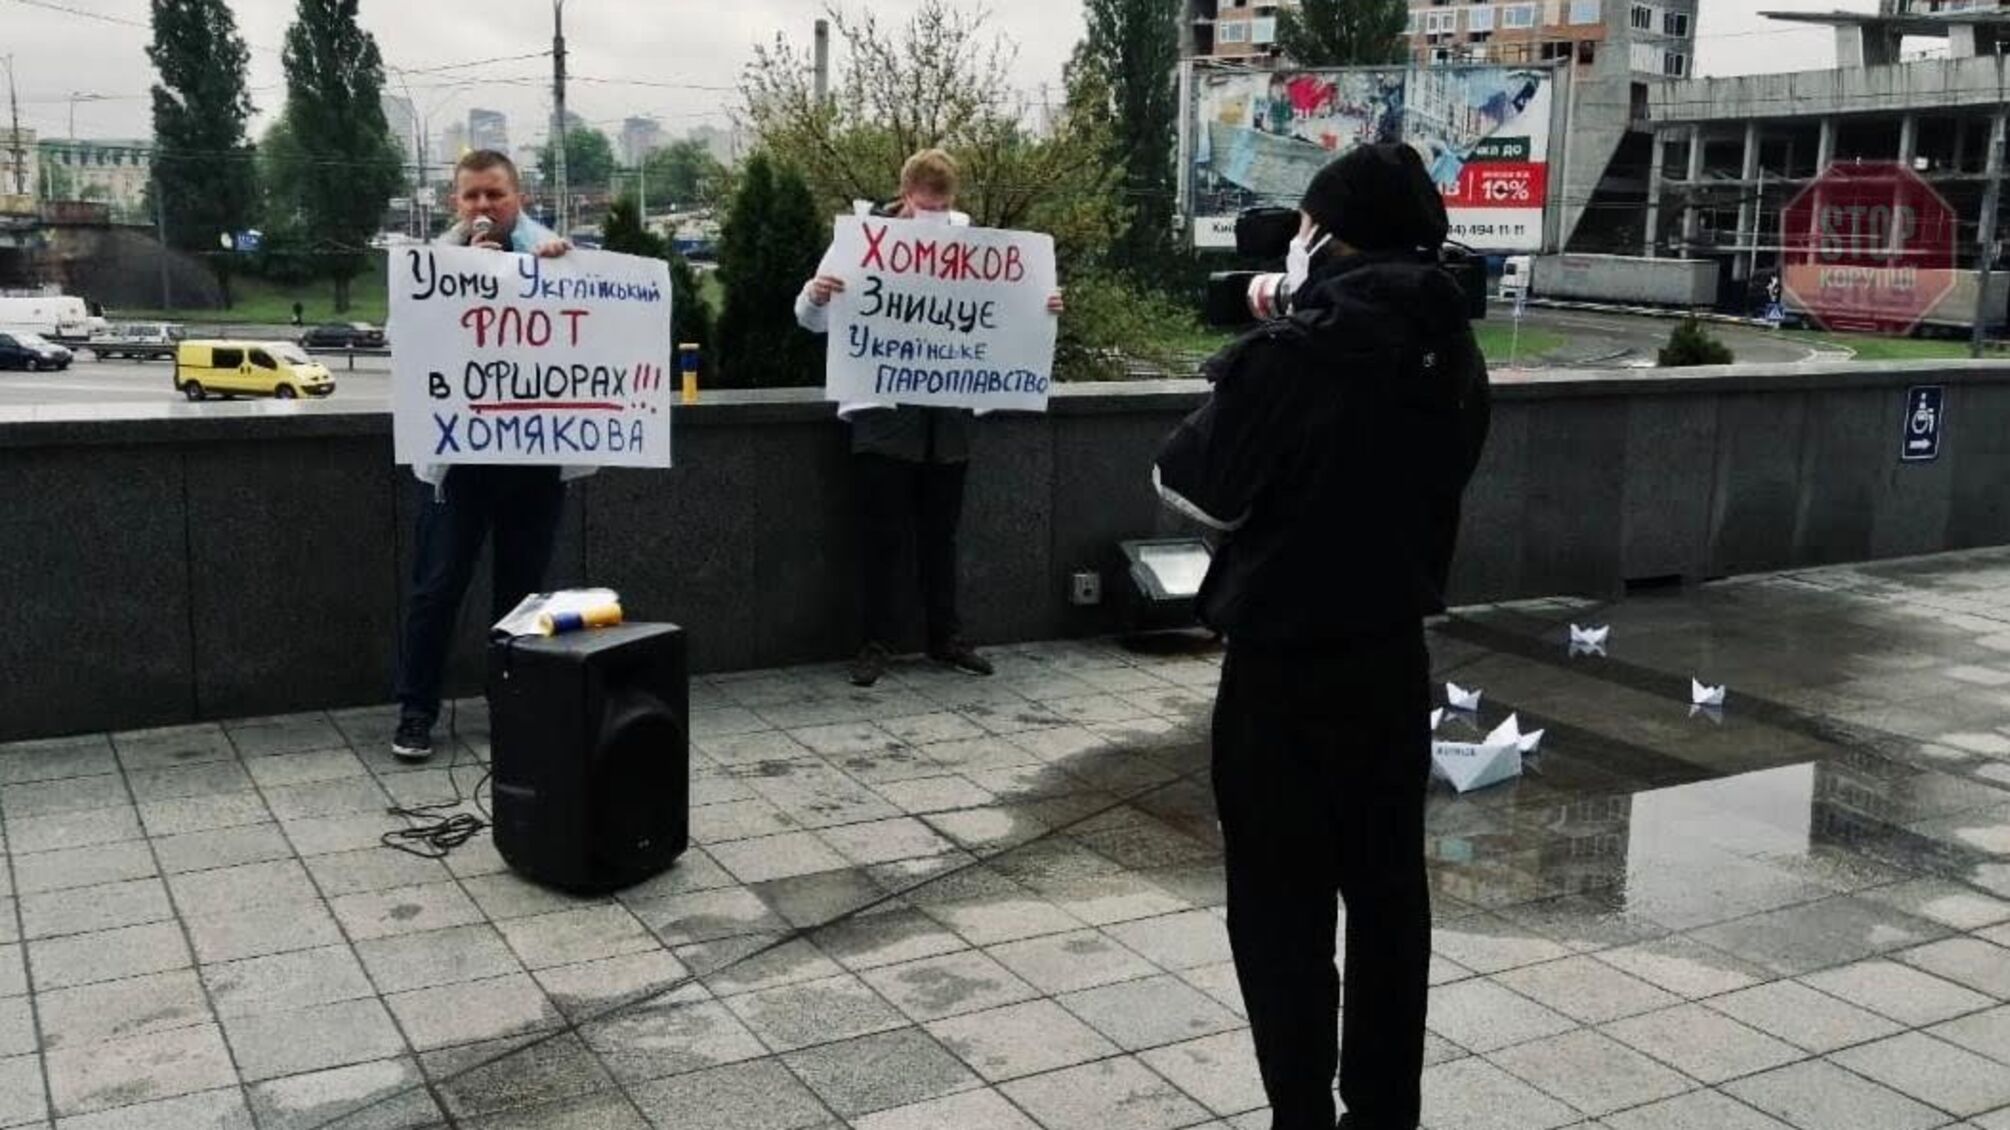 SOS-азбука Морзе для Криклія: під Мінінфраструктури акція через керівника УДП Хомякова